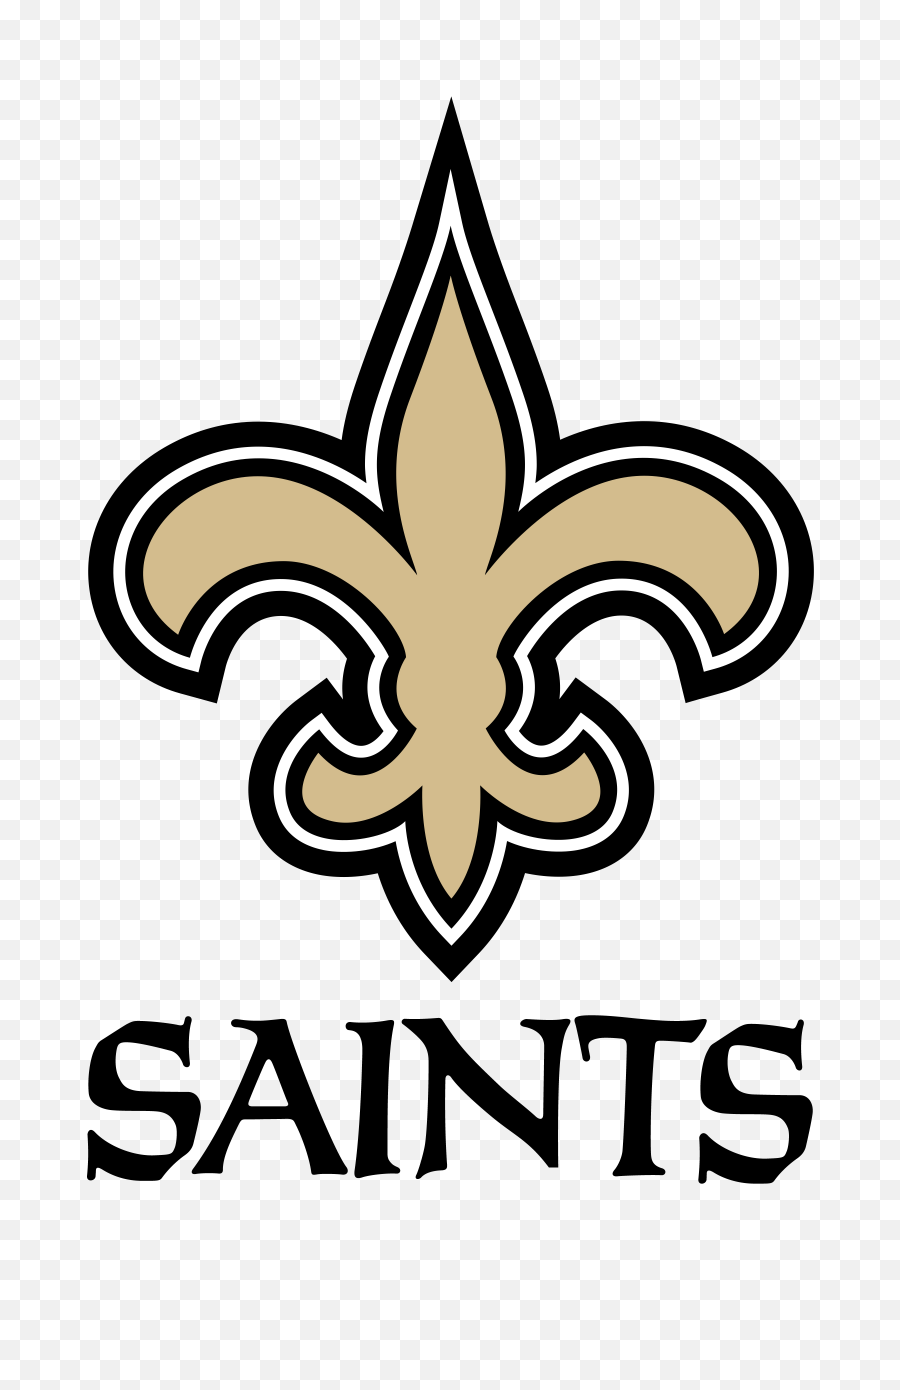 New Orleans Saints Football Logo - New Orleans Saints Logo Png,Saints Png